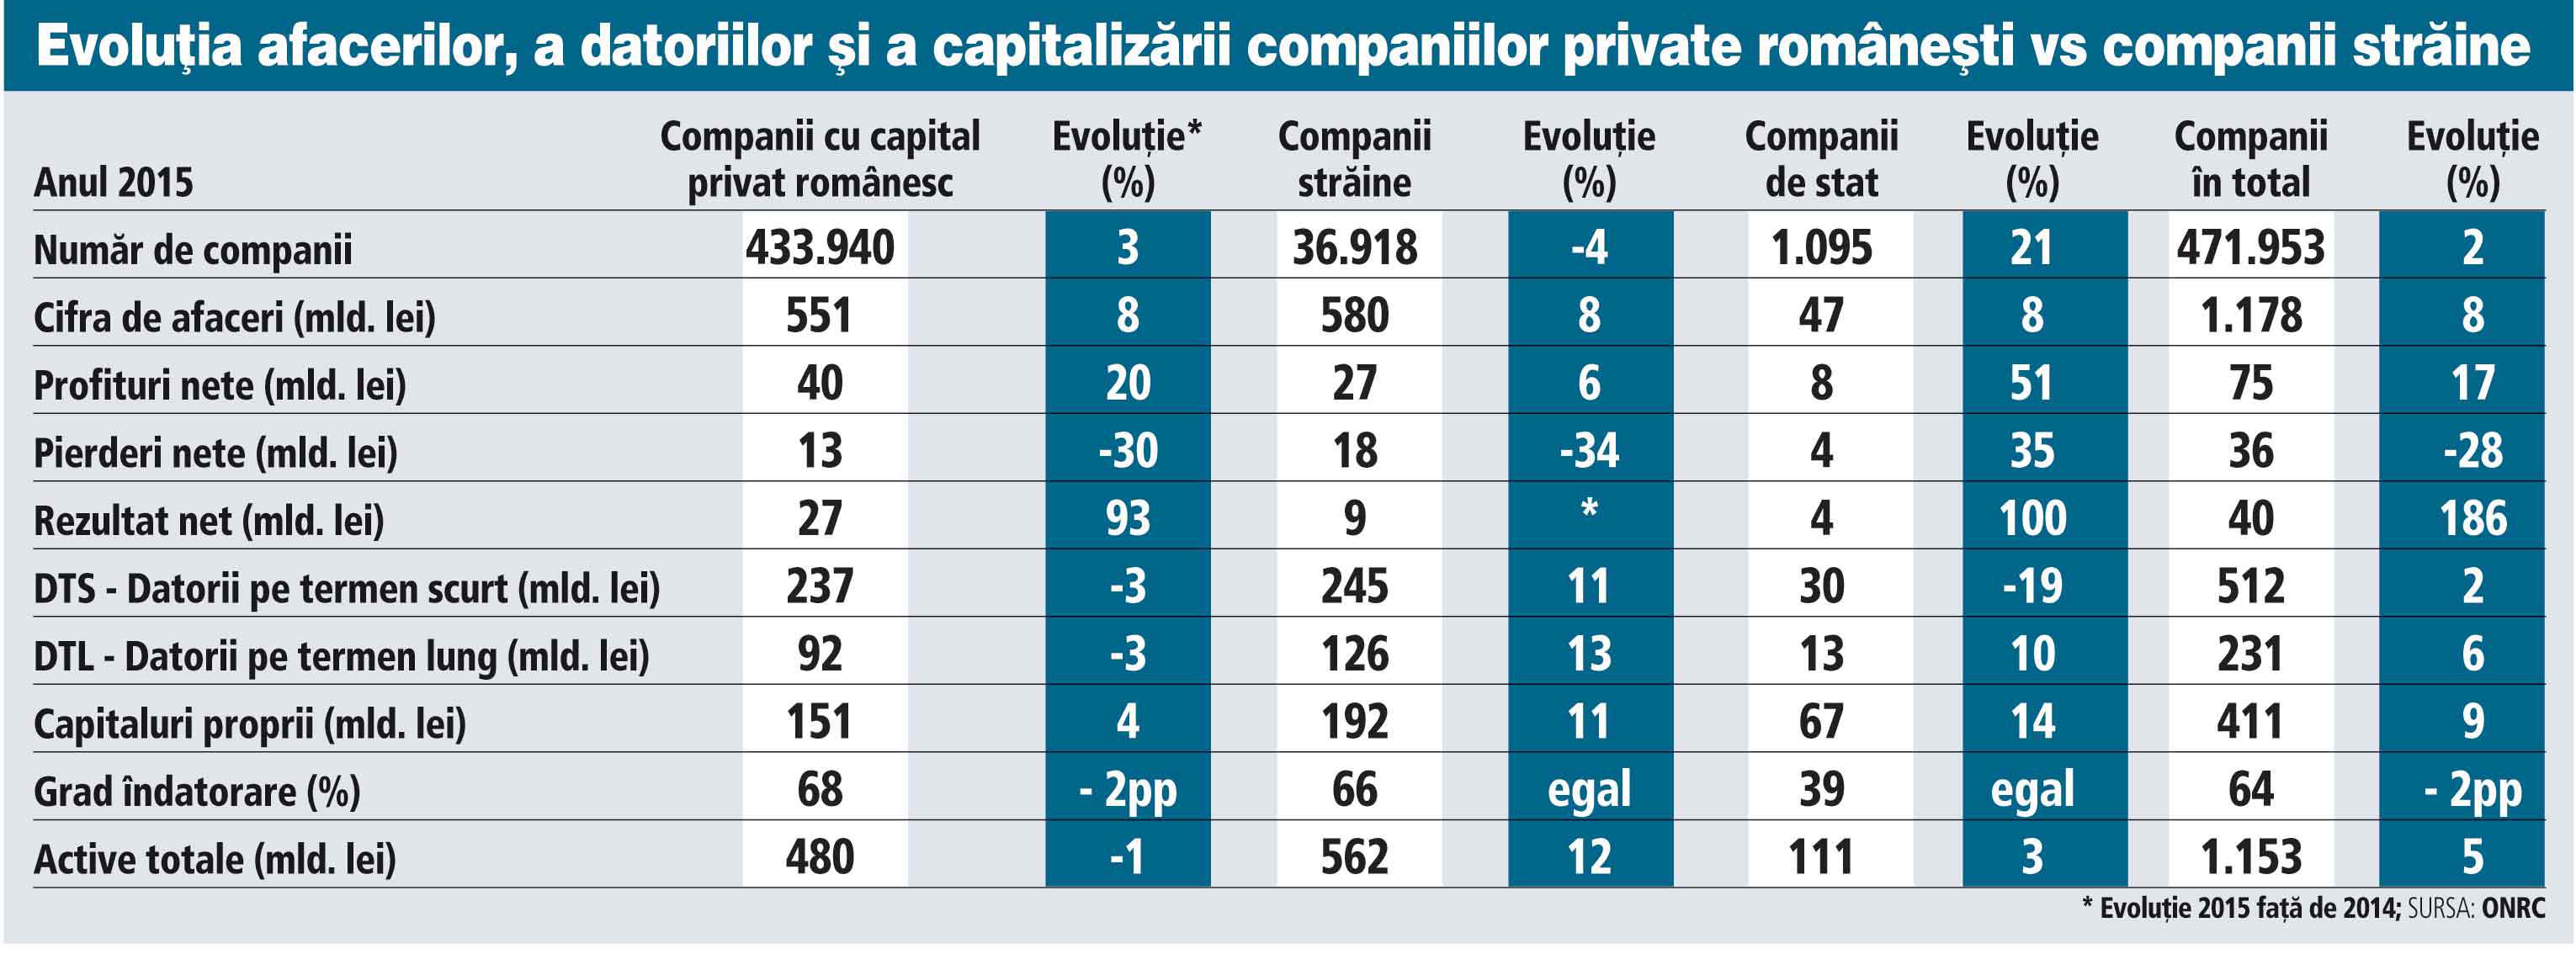 Companiile cu capital privat românesc au capitaluri proprii de 33 mld. euro, firmele străine de 43 mld. euro